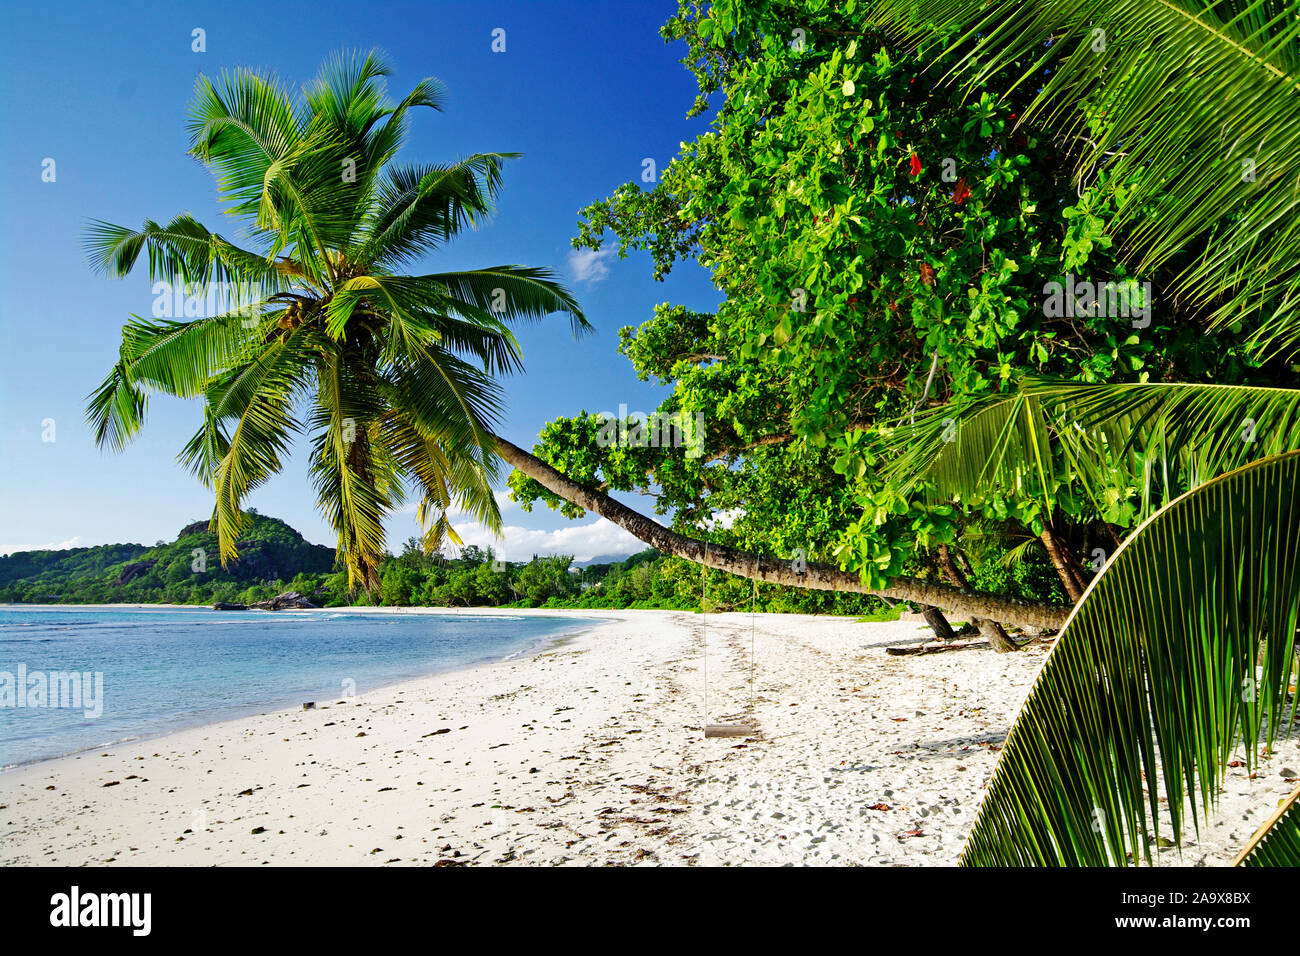 Palme mit der Schaukel Anse Gaulettes süd im westen der Insel Mahé, Seychellen Banque D'Images